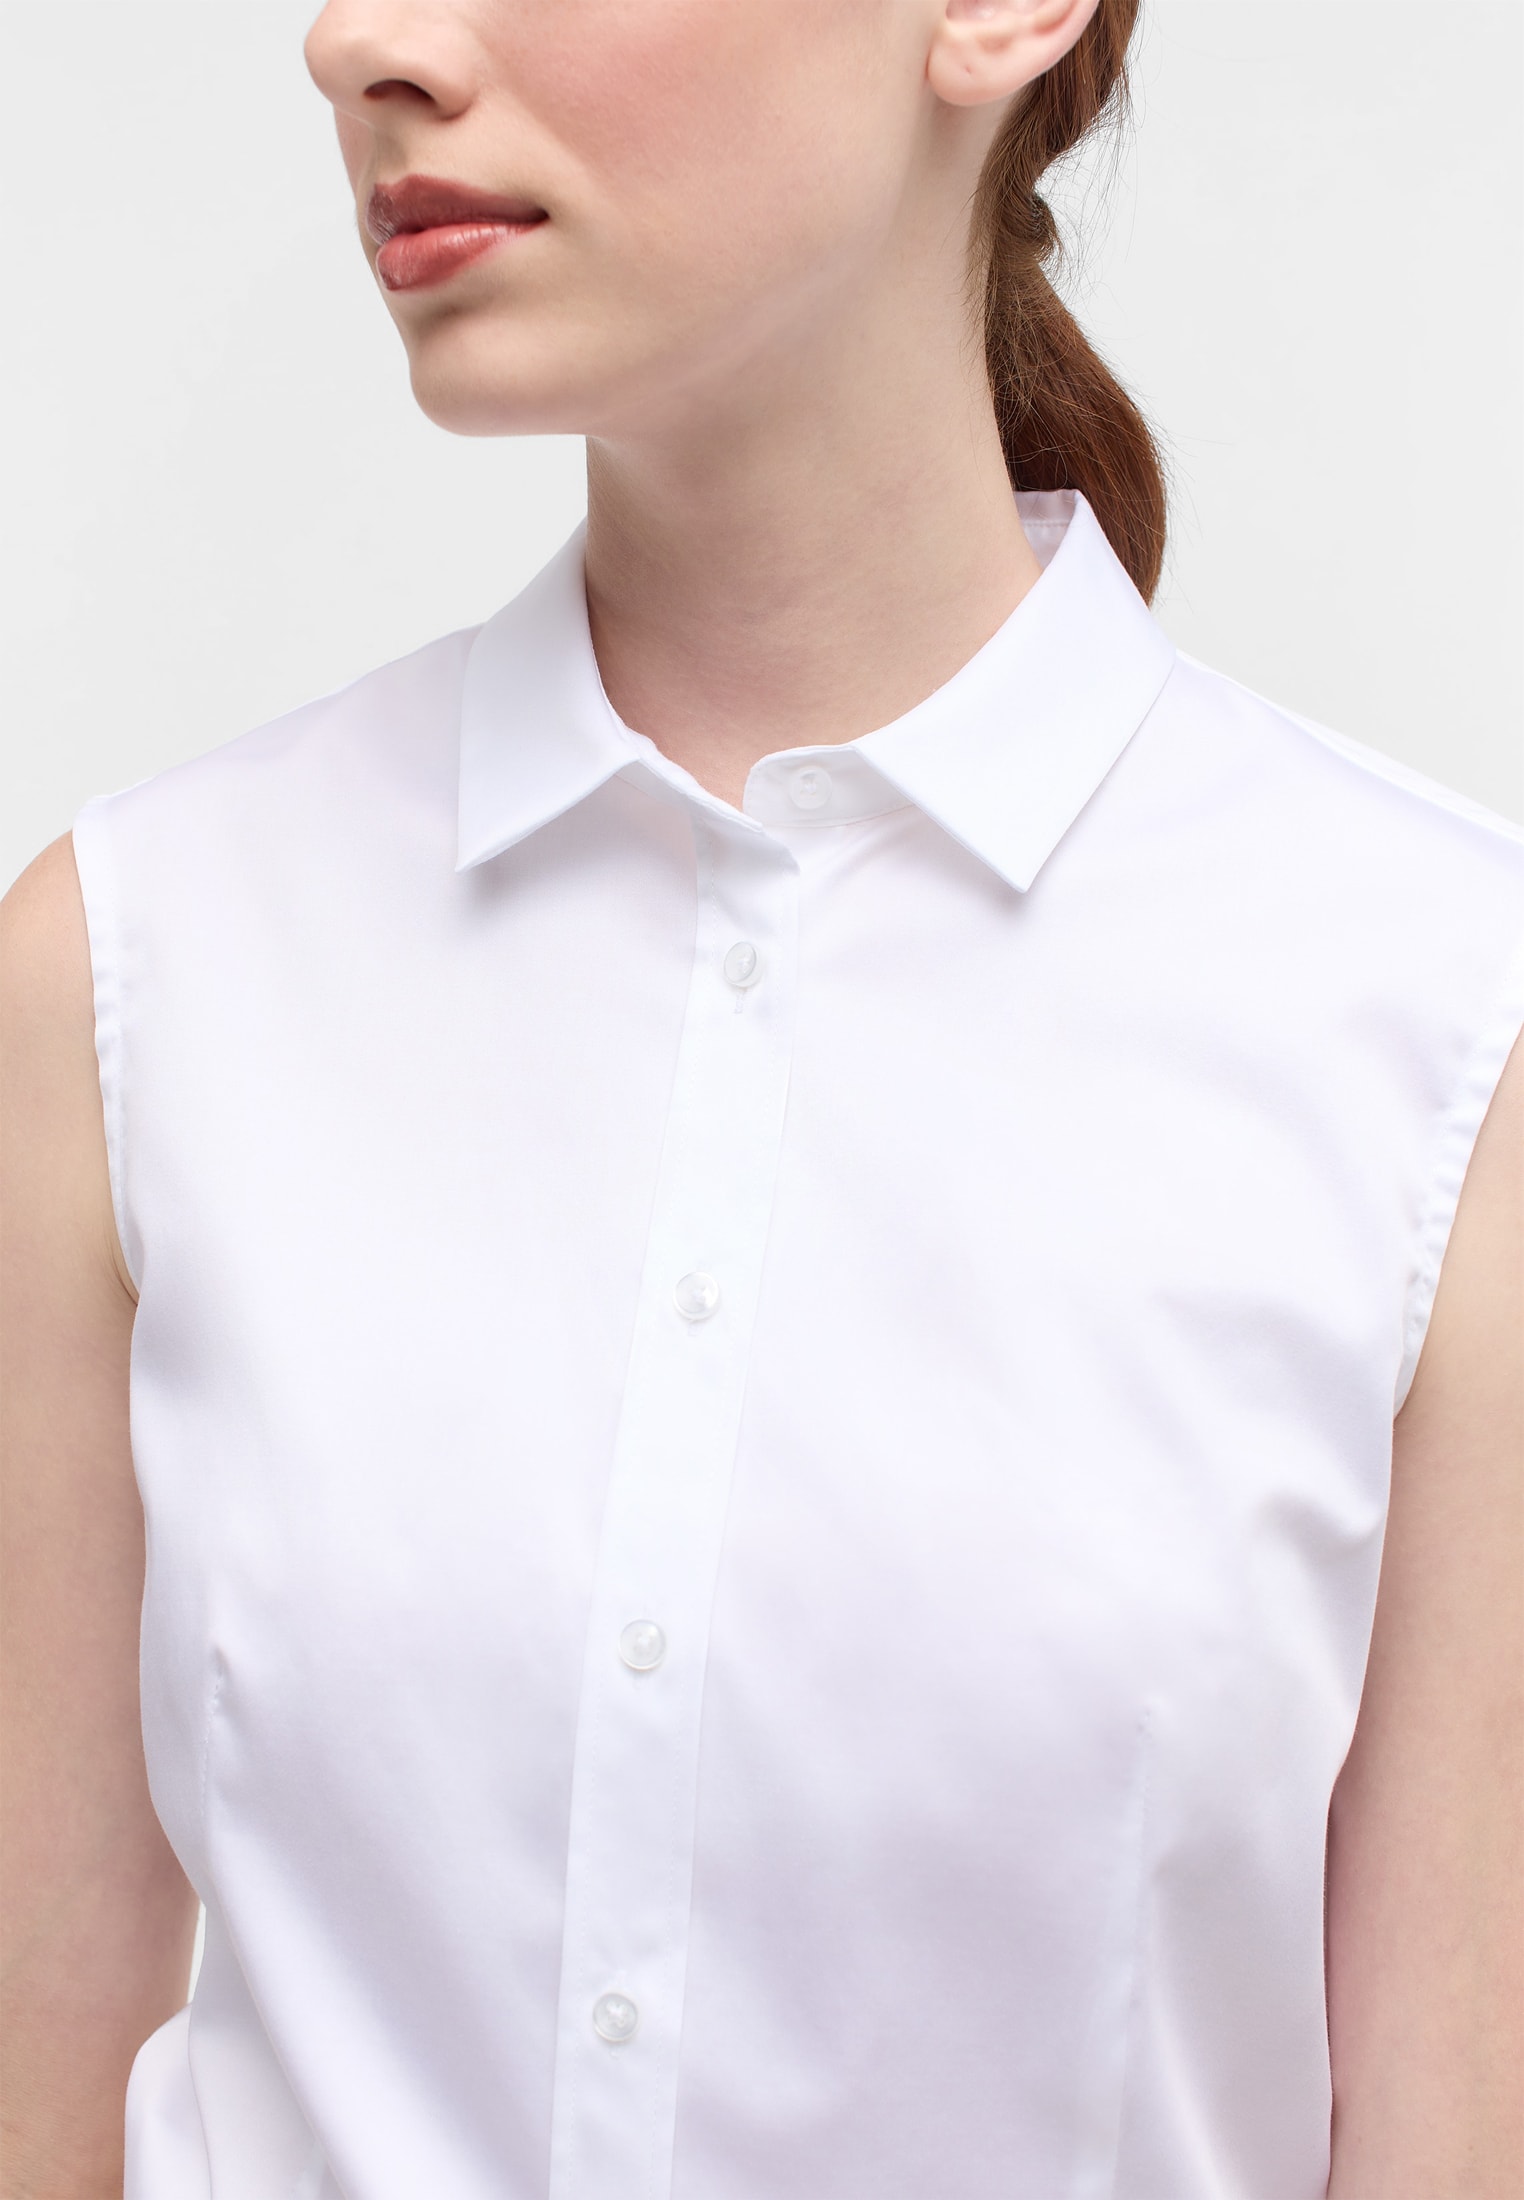 Satin Shirt Bluse in weiß | weiß unifarben | | Arm | 34 ohne 2BL03768-00-01-34-sl